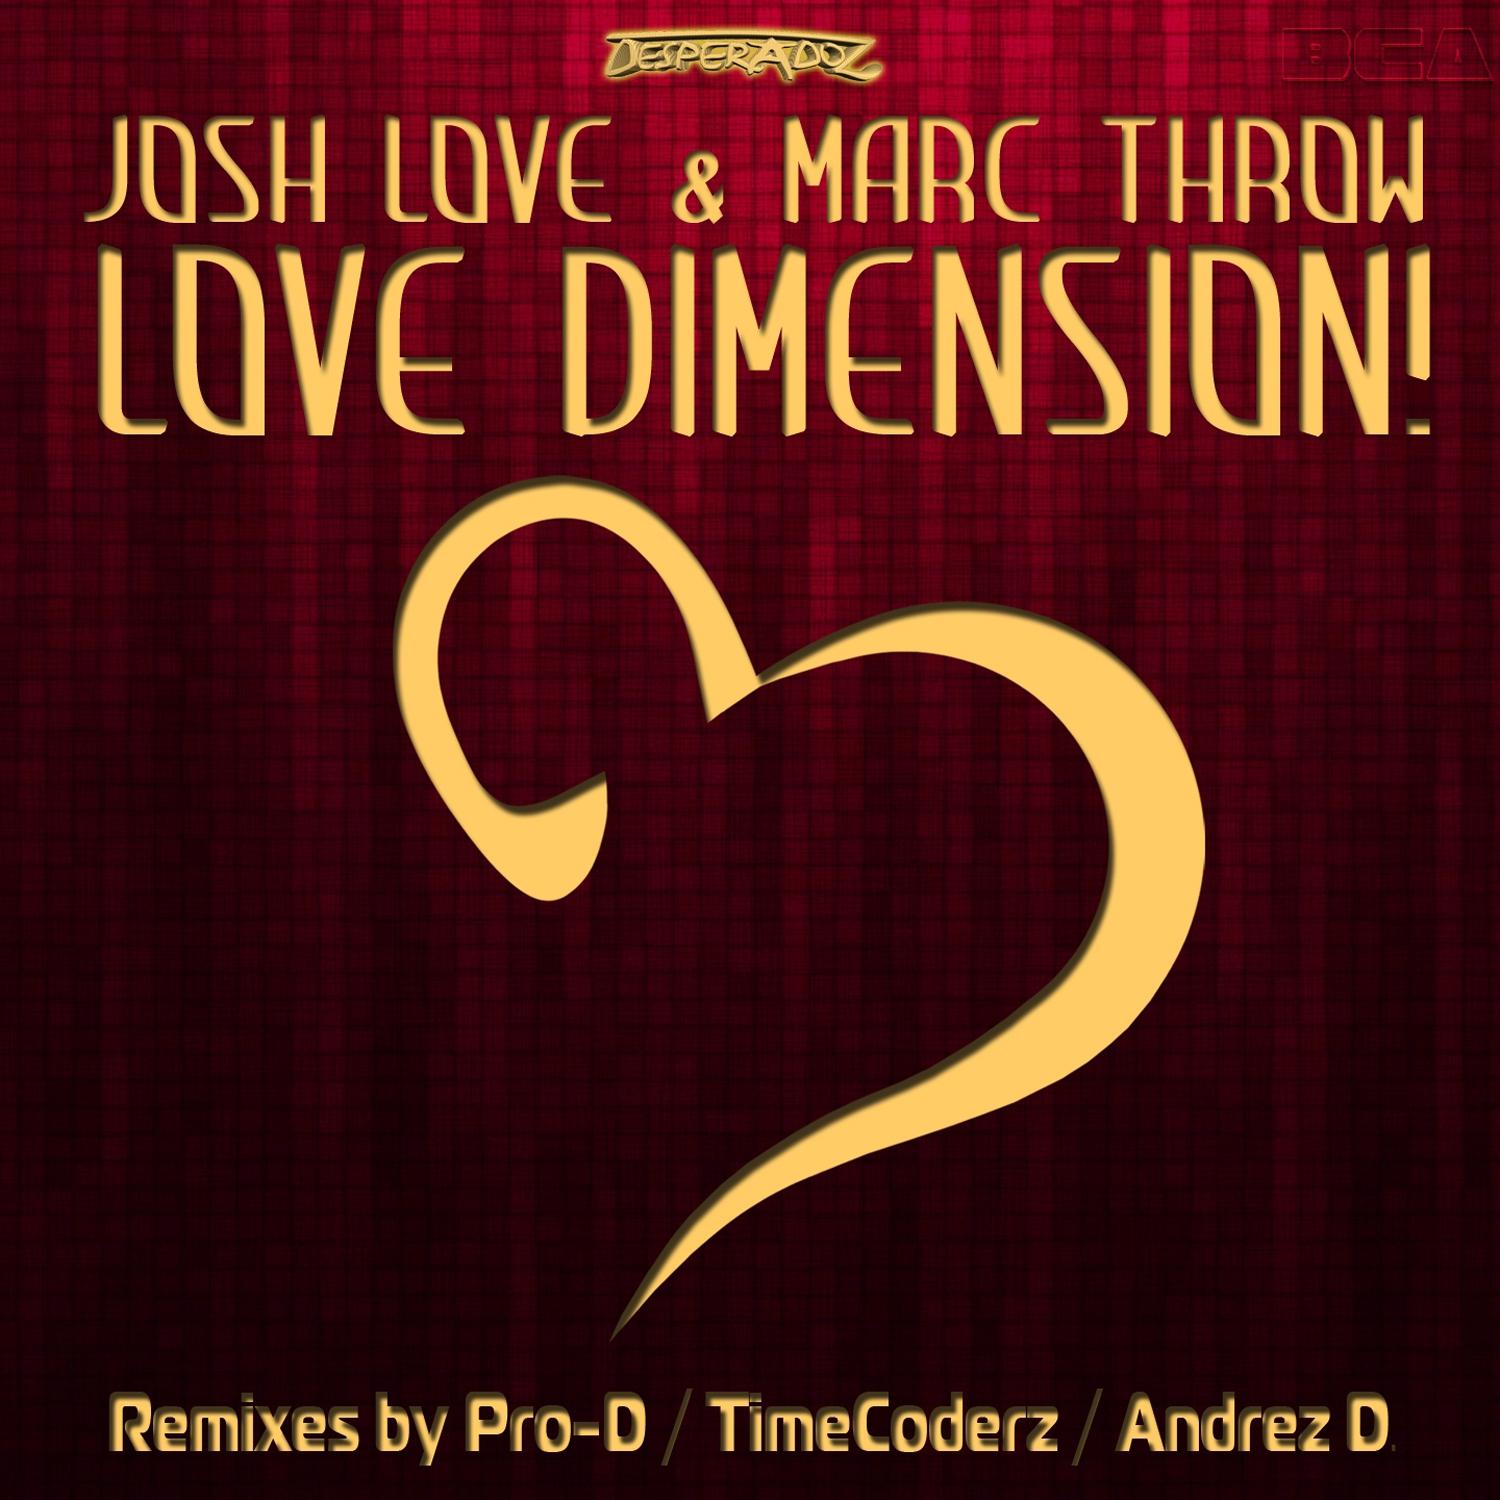 Love Dimension! (Andrez D. Remix)